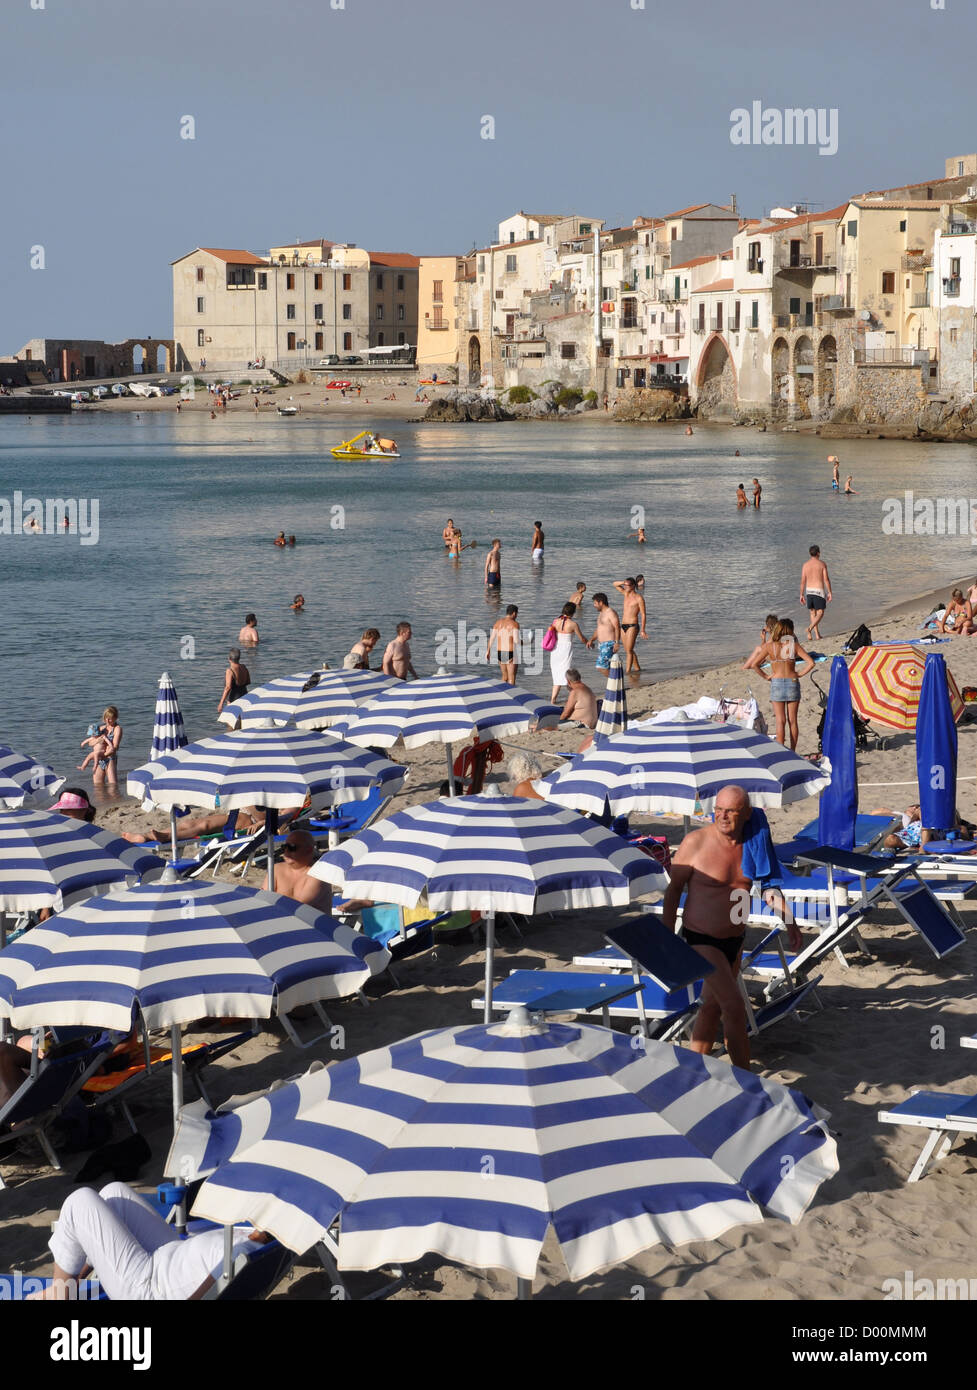 Blanc/bleu parasols sur la plage de Cefalù, Sicile, Italie Banque D'Images